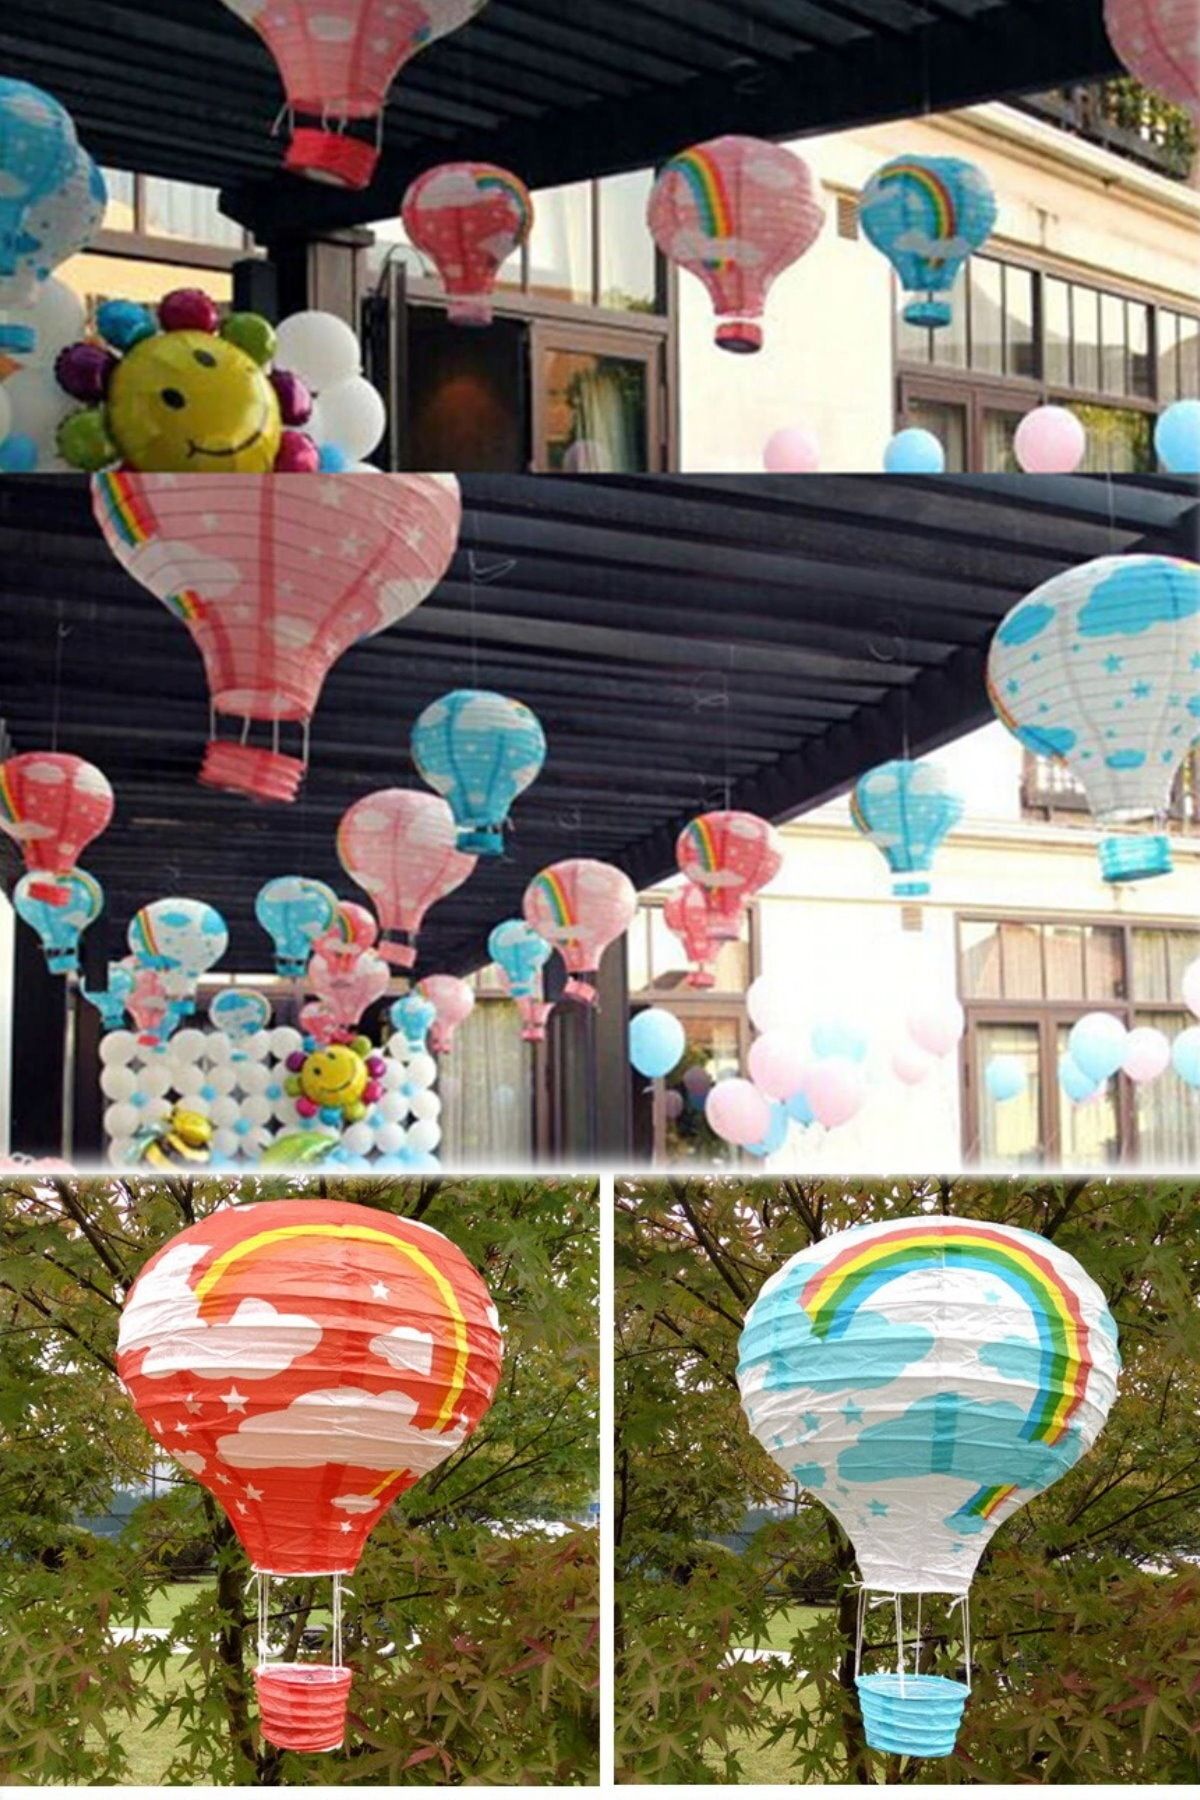 Utelips Gökkuşağı Rengarenk 5 Adet Dilek Feneri Kağıt Dekoratif Eğlenceli Uçan Balon Hediyelik Japon Feneri